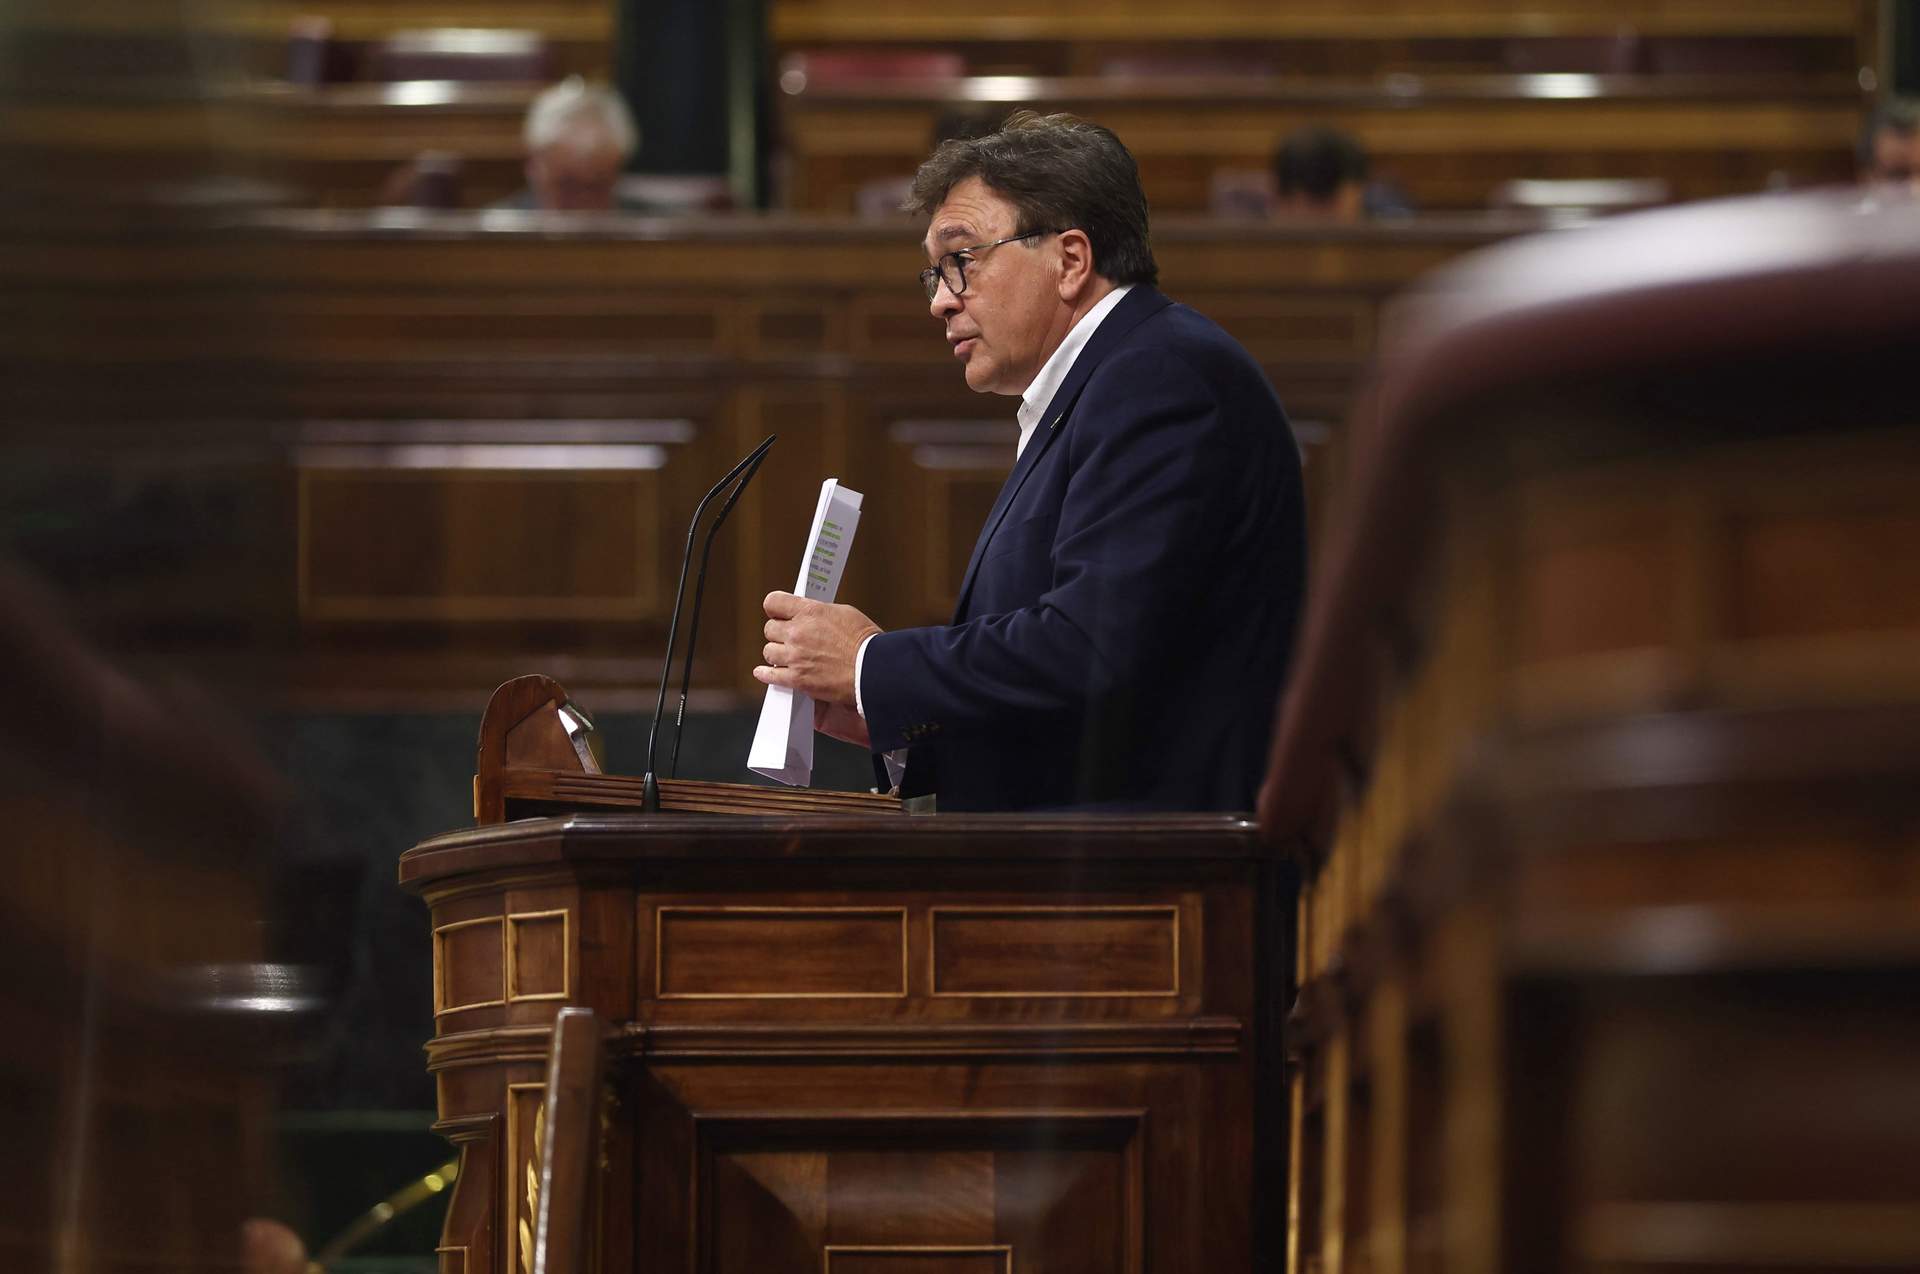 La España Vaciada prioriza ahora las políticas autonómicas frente a las temáticas nacionales: “Es donde podemos cambiar más las cosas”